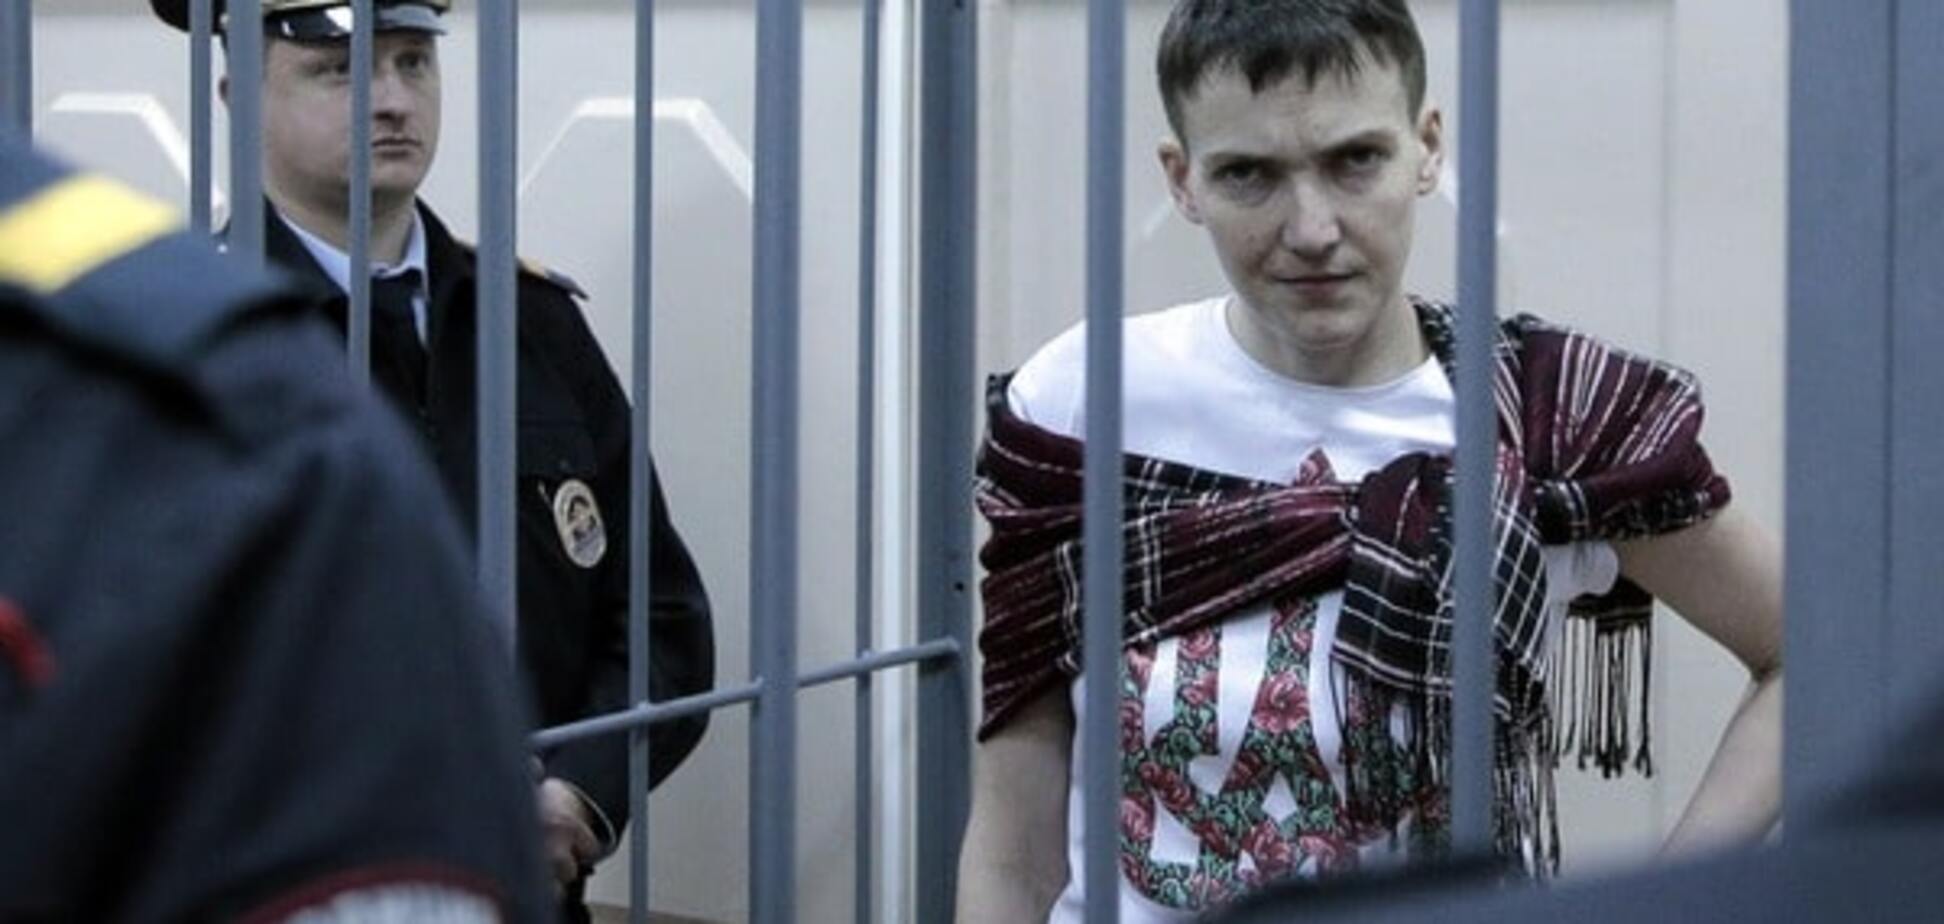 У свидетеля защиты по делу Савченко начались проблемы на работе